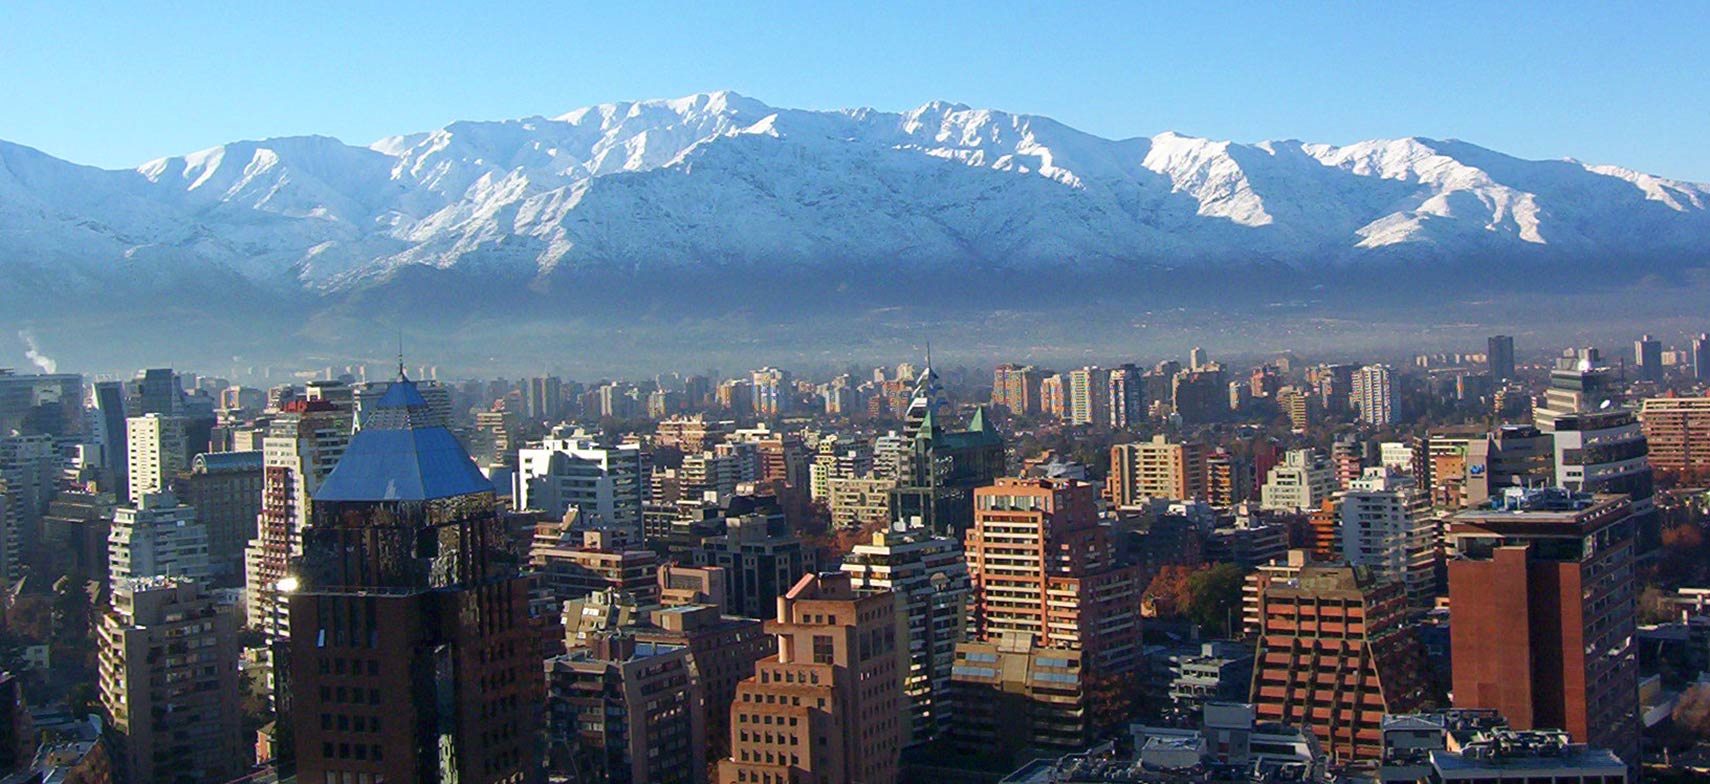 Google Map of Santiago de Chile, Chile's capital city - Nations Online